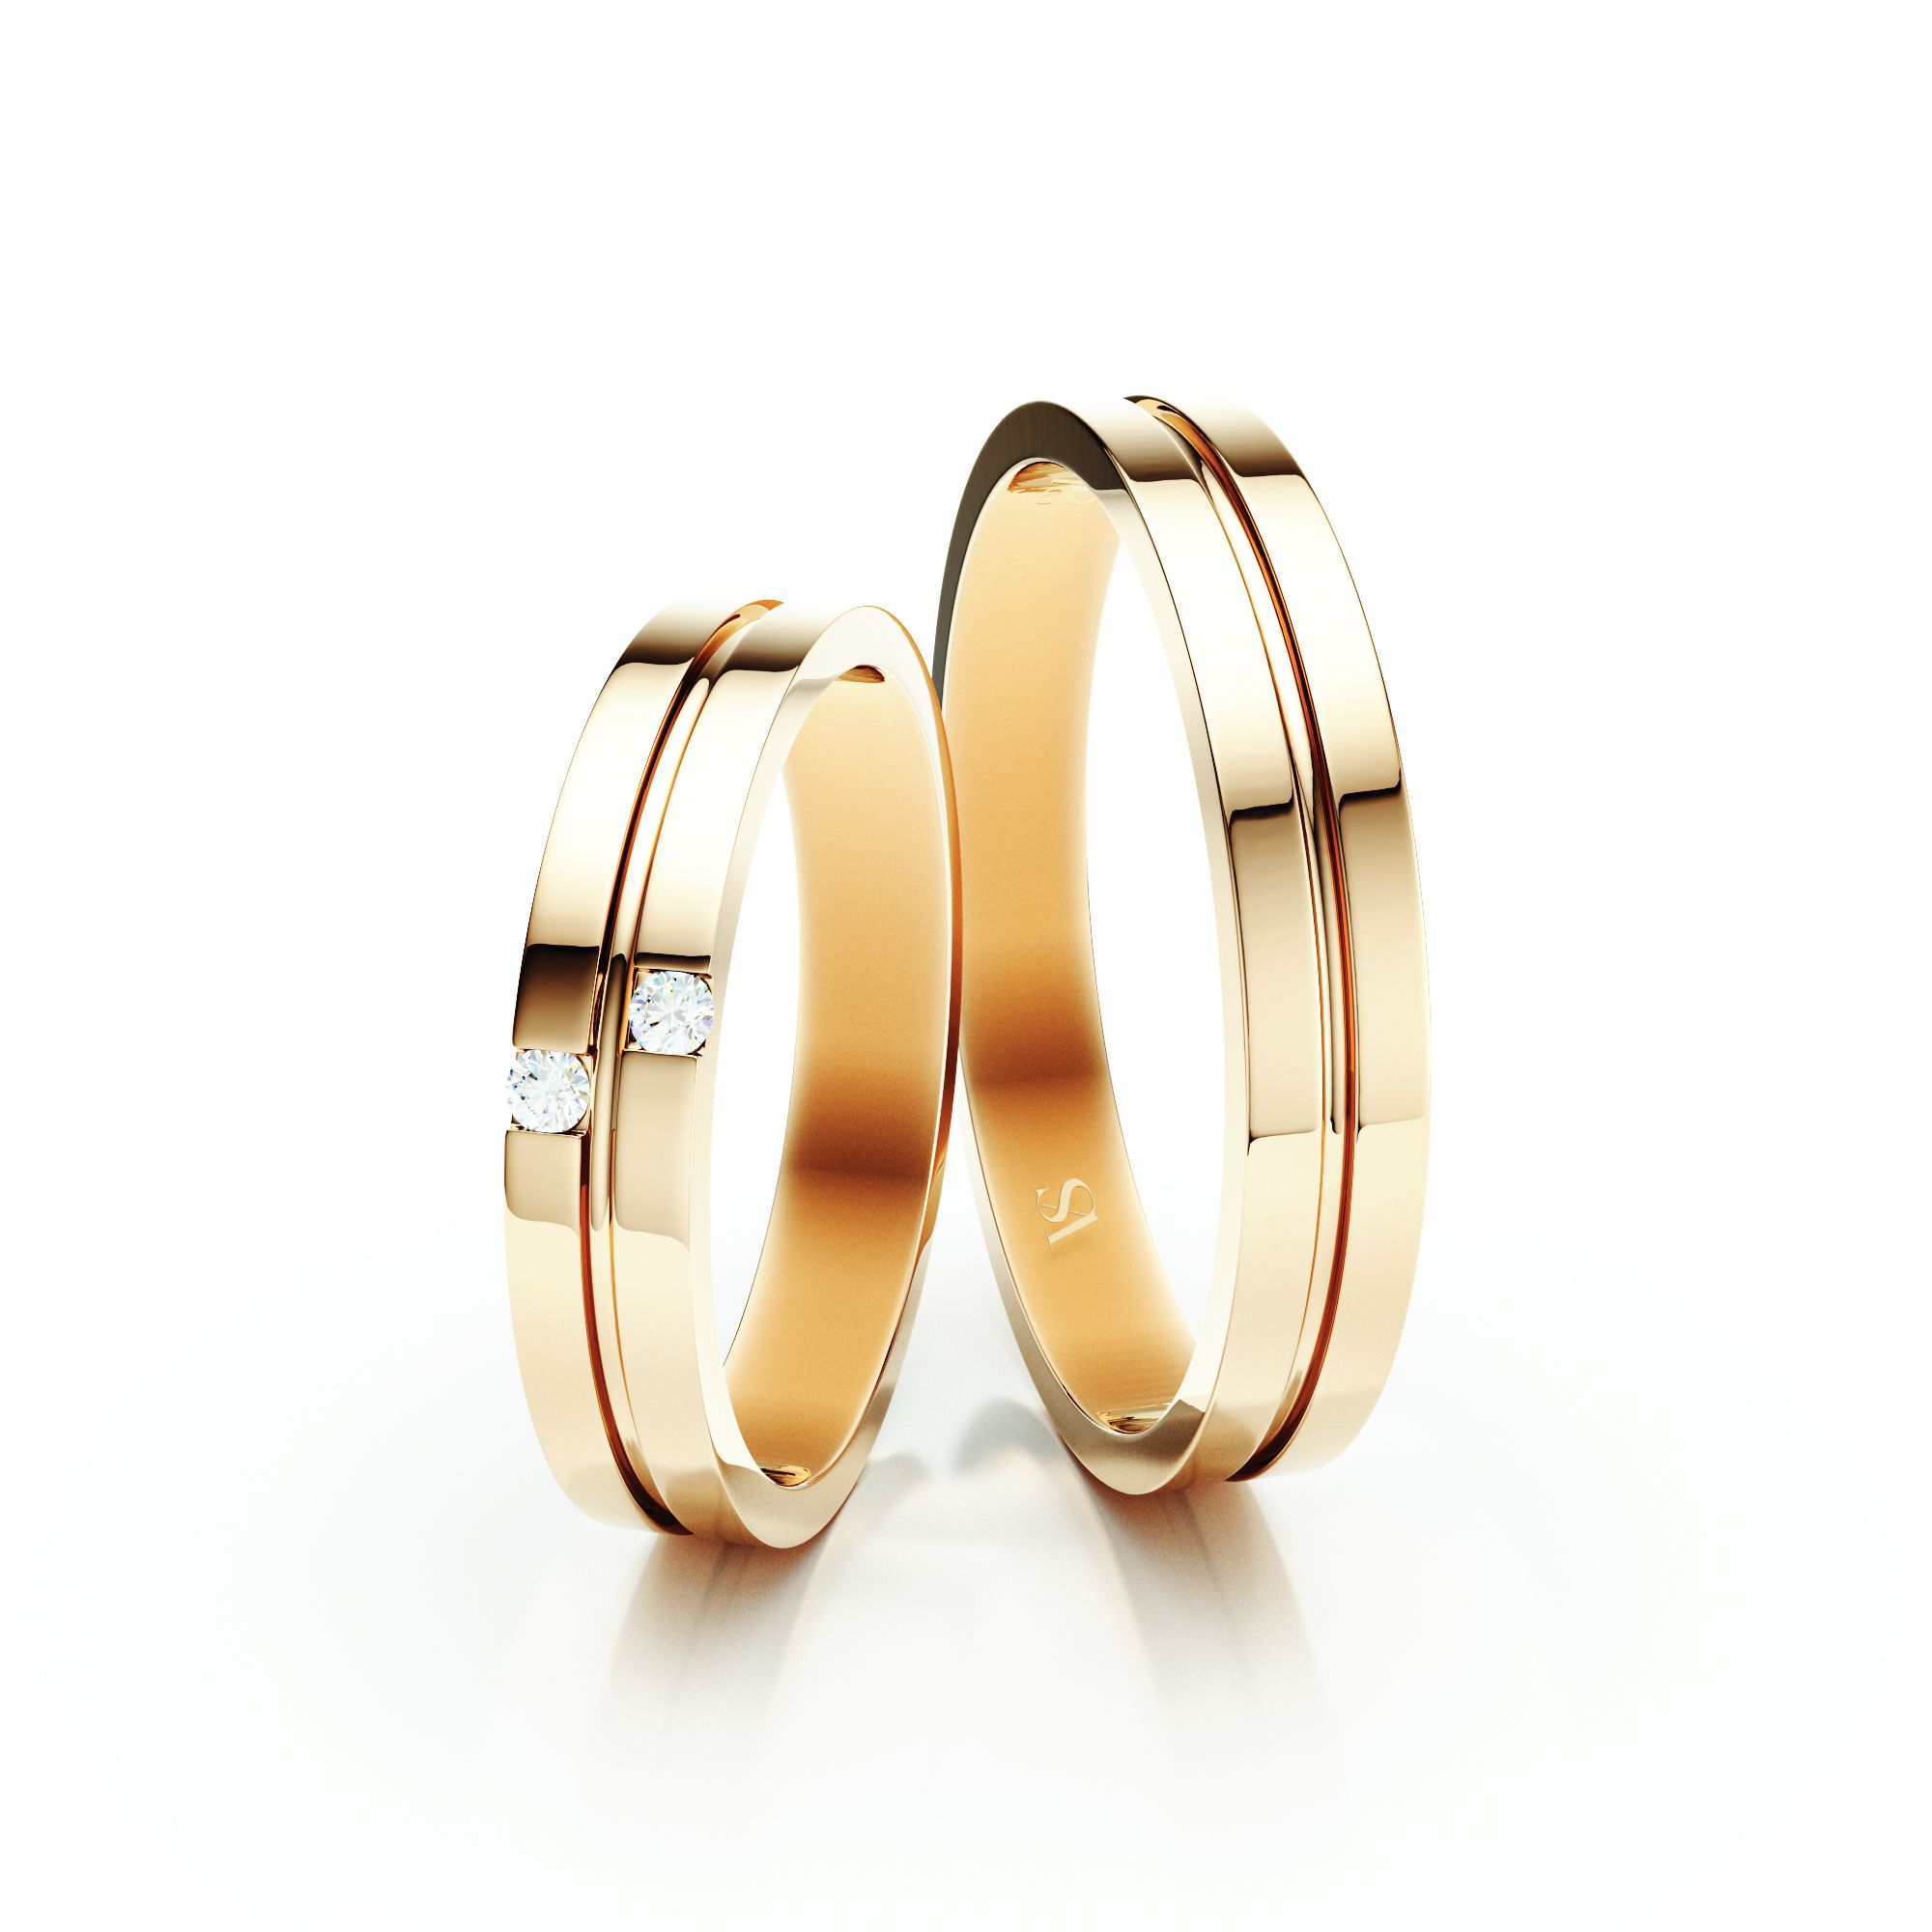 Snubní prsteny VS019 – žluté zlato